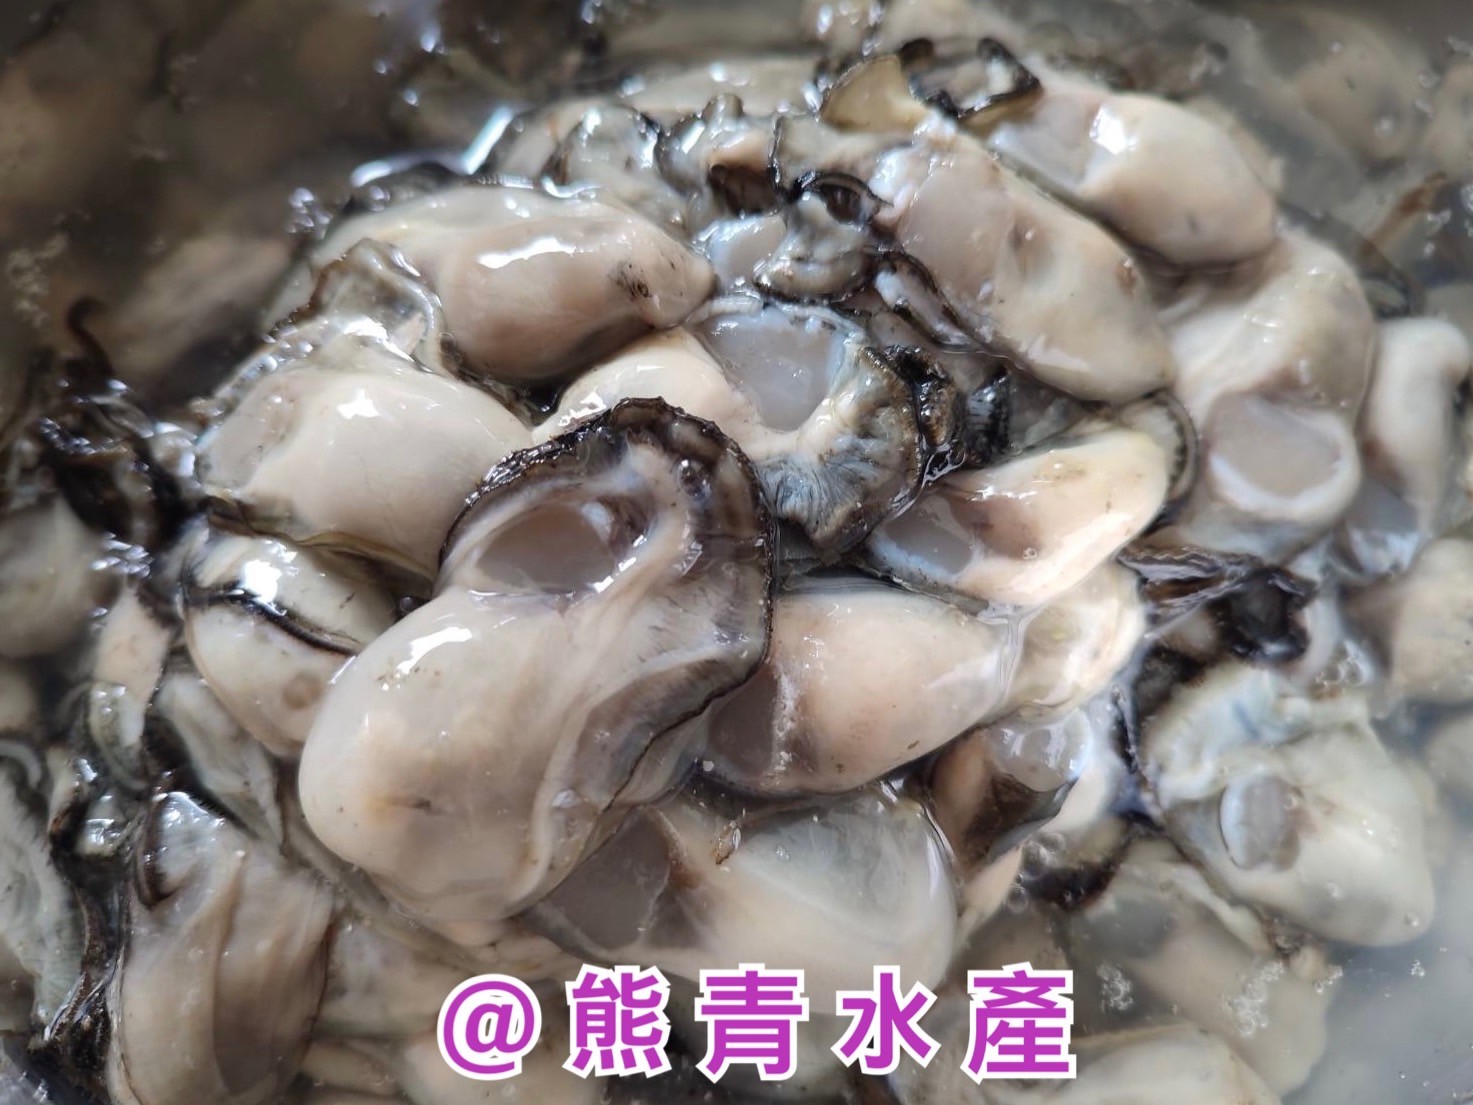 【東石鮮蚵】東石肥美大牡蠣*6包 現撈去殼 600g±10%/包